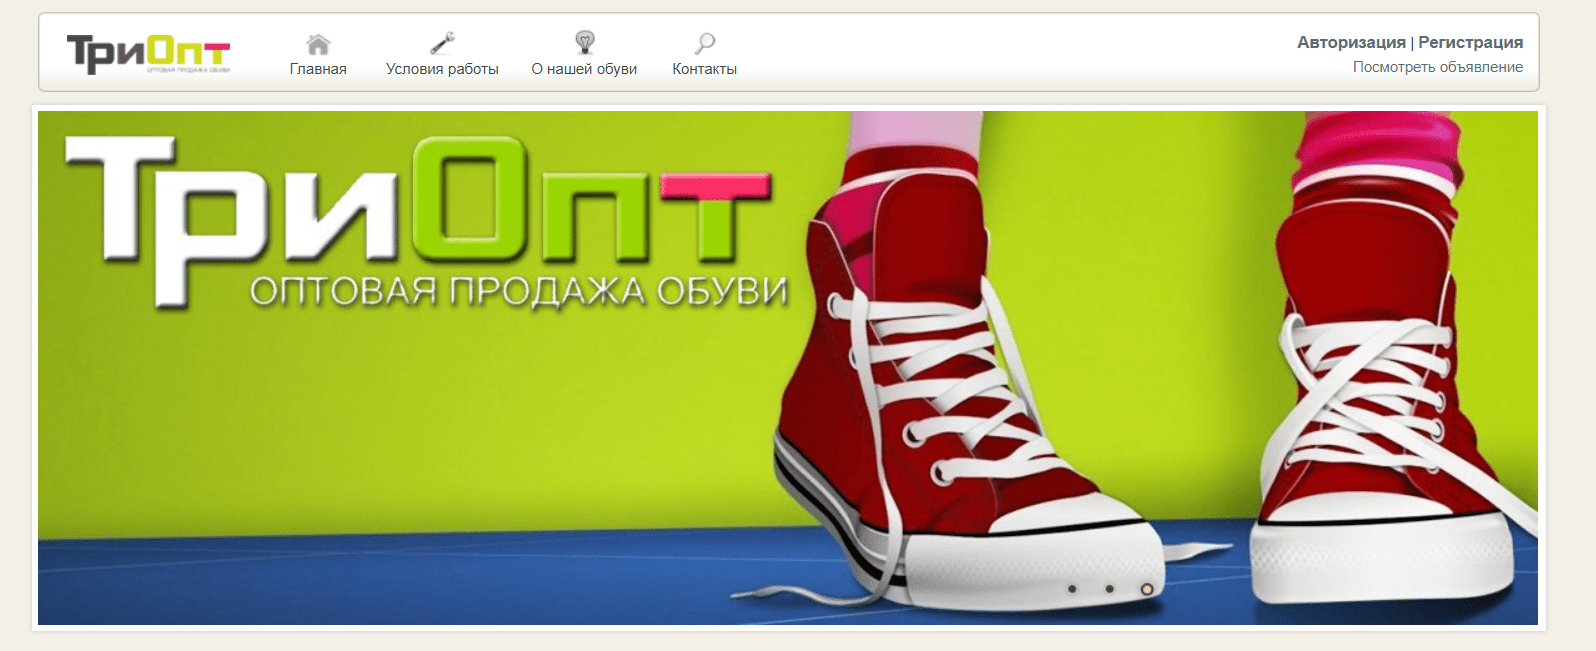 Триопт Обувь Интернет Магазин Официальный Сайт